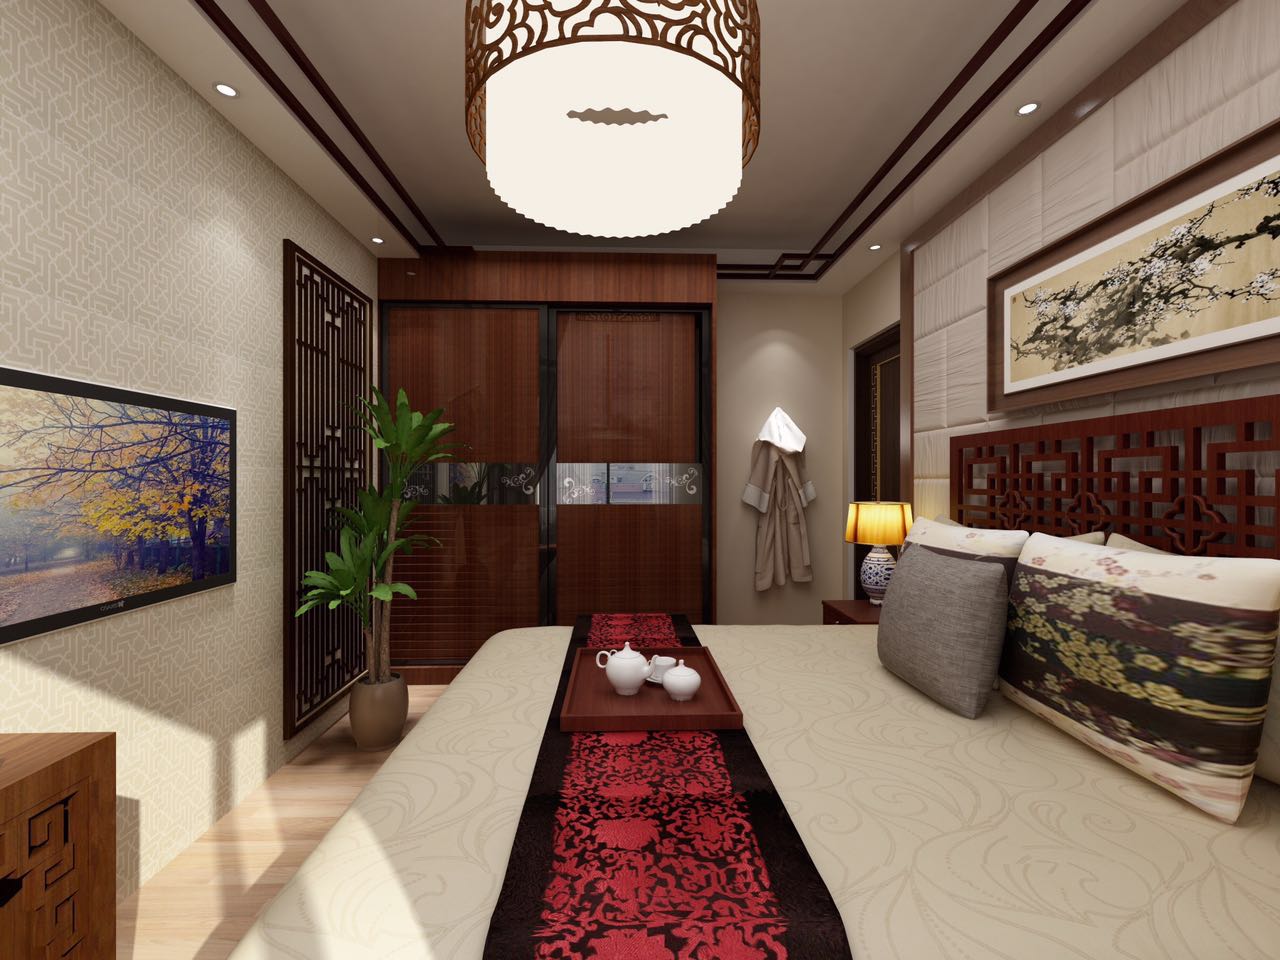 二居 小资 80后 旧房改造 收纳 卧室图片来自北京今朝装饰-慧琳在格调小区 75㎡ 中式风格的分享